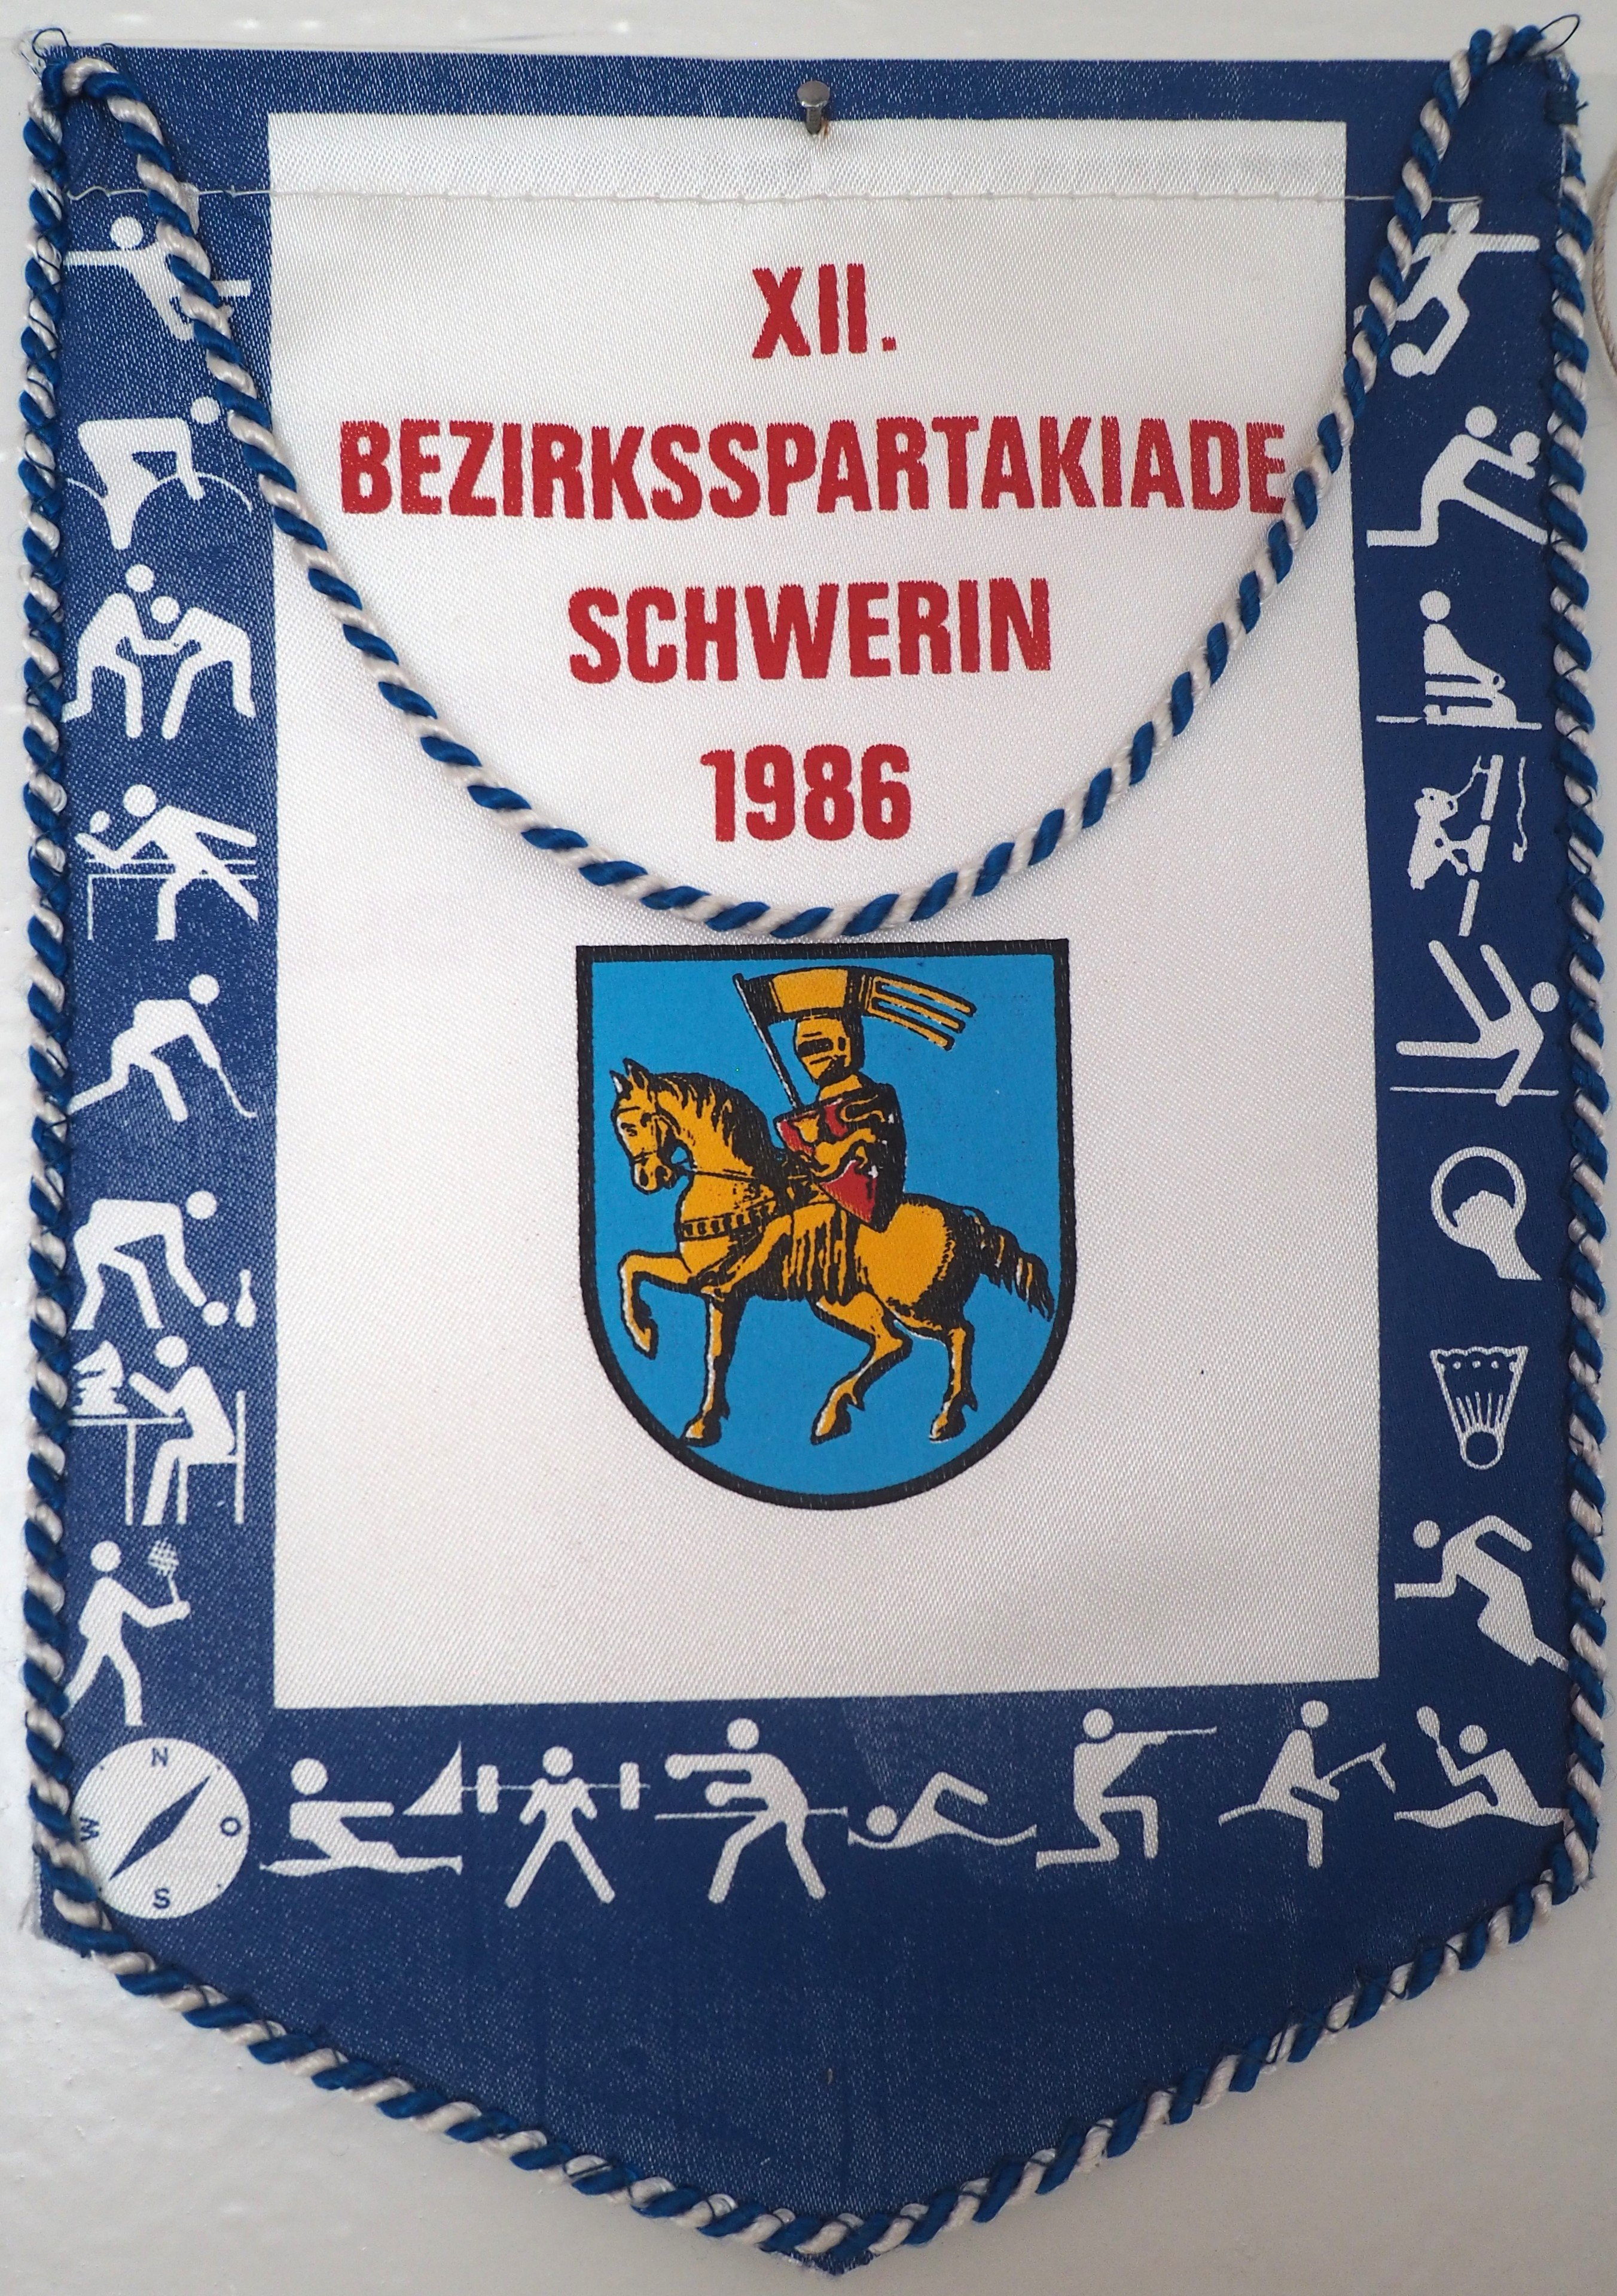 Wimpel: 12. Bezirksspartakiade Schwerin 1986 (DDR Geschichtsmuseum im Dokumentationszentrum Perleberg CC BY-SA)